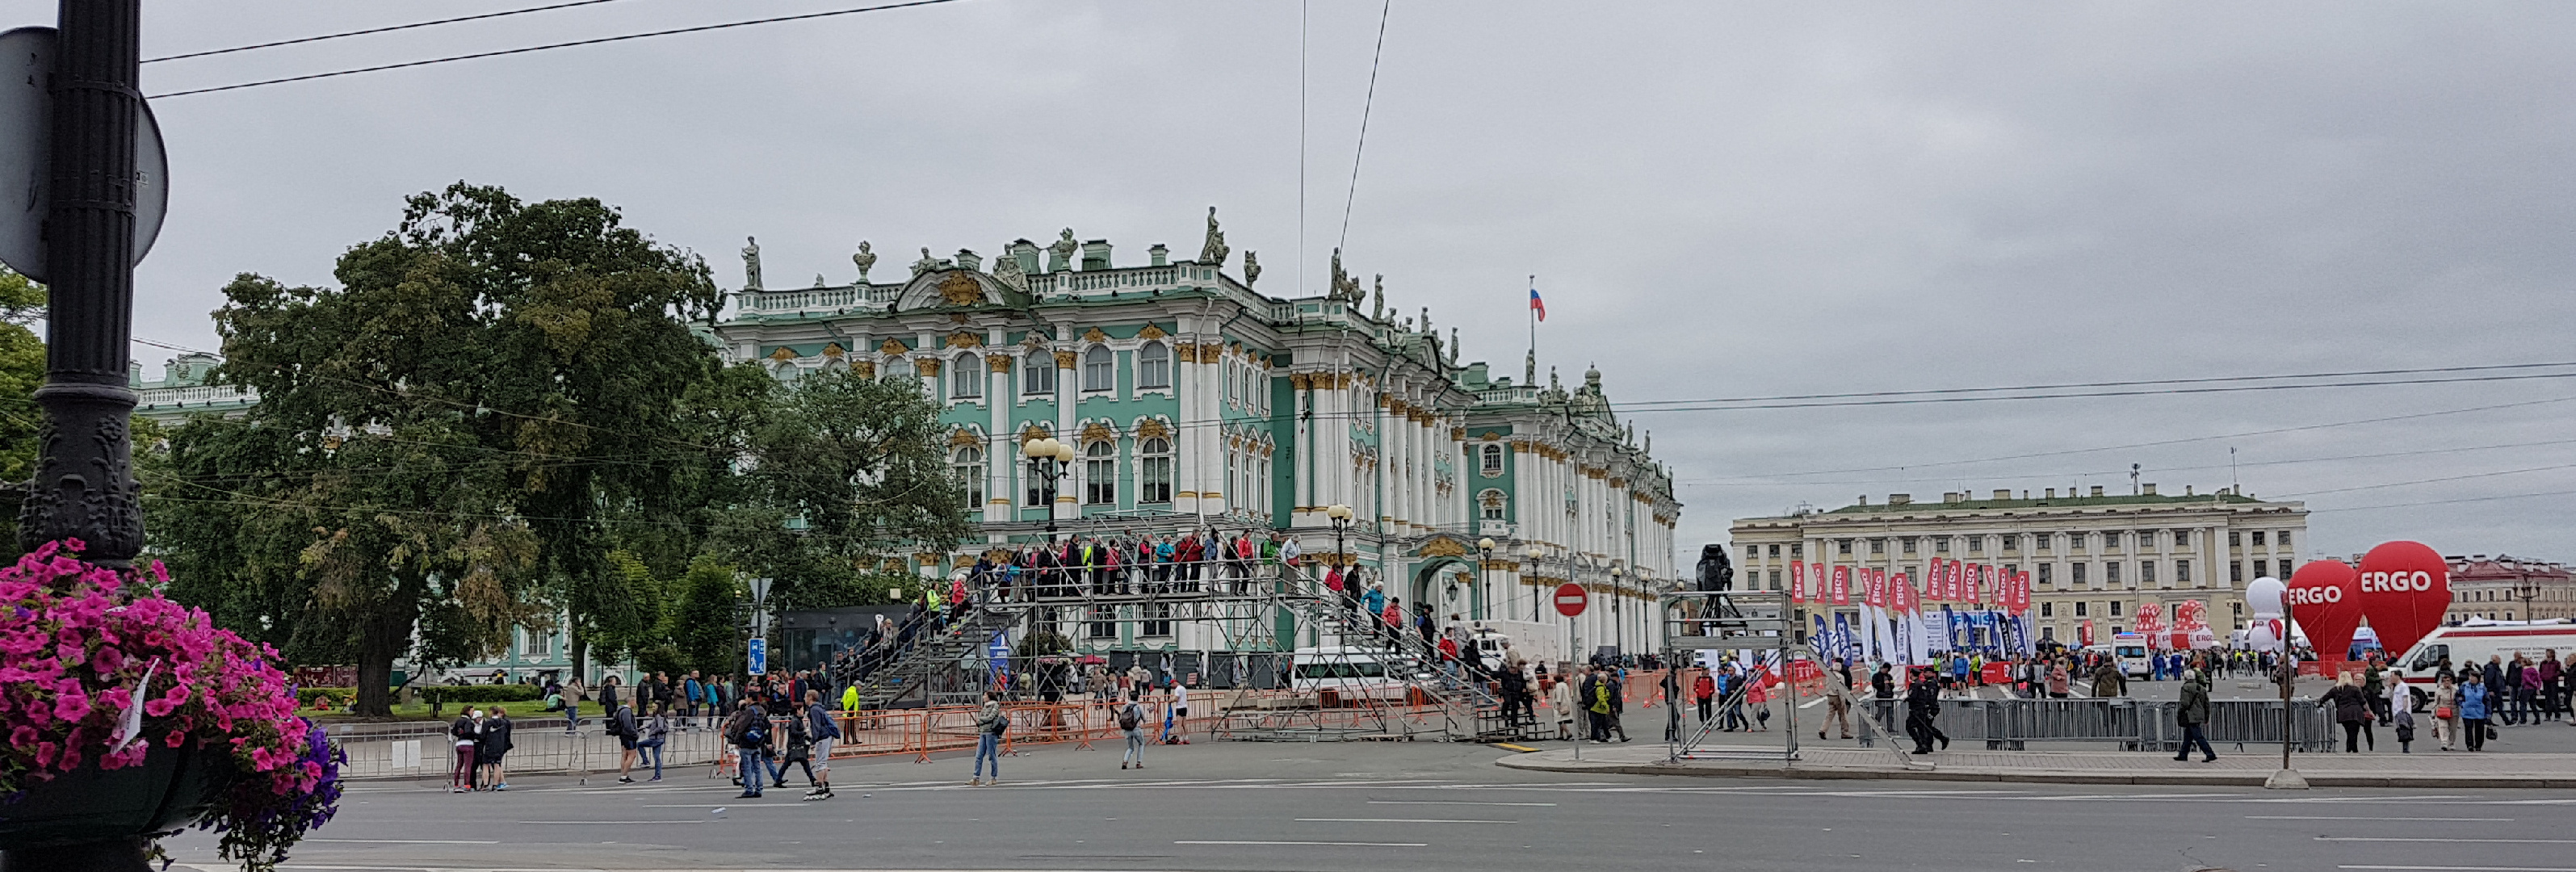 20170709-100213-St-Petersburg-Hermitage-SJ-2.jpg